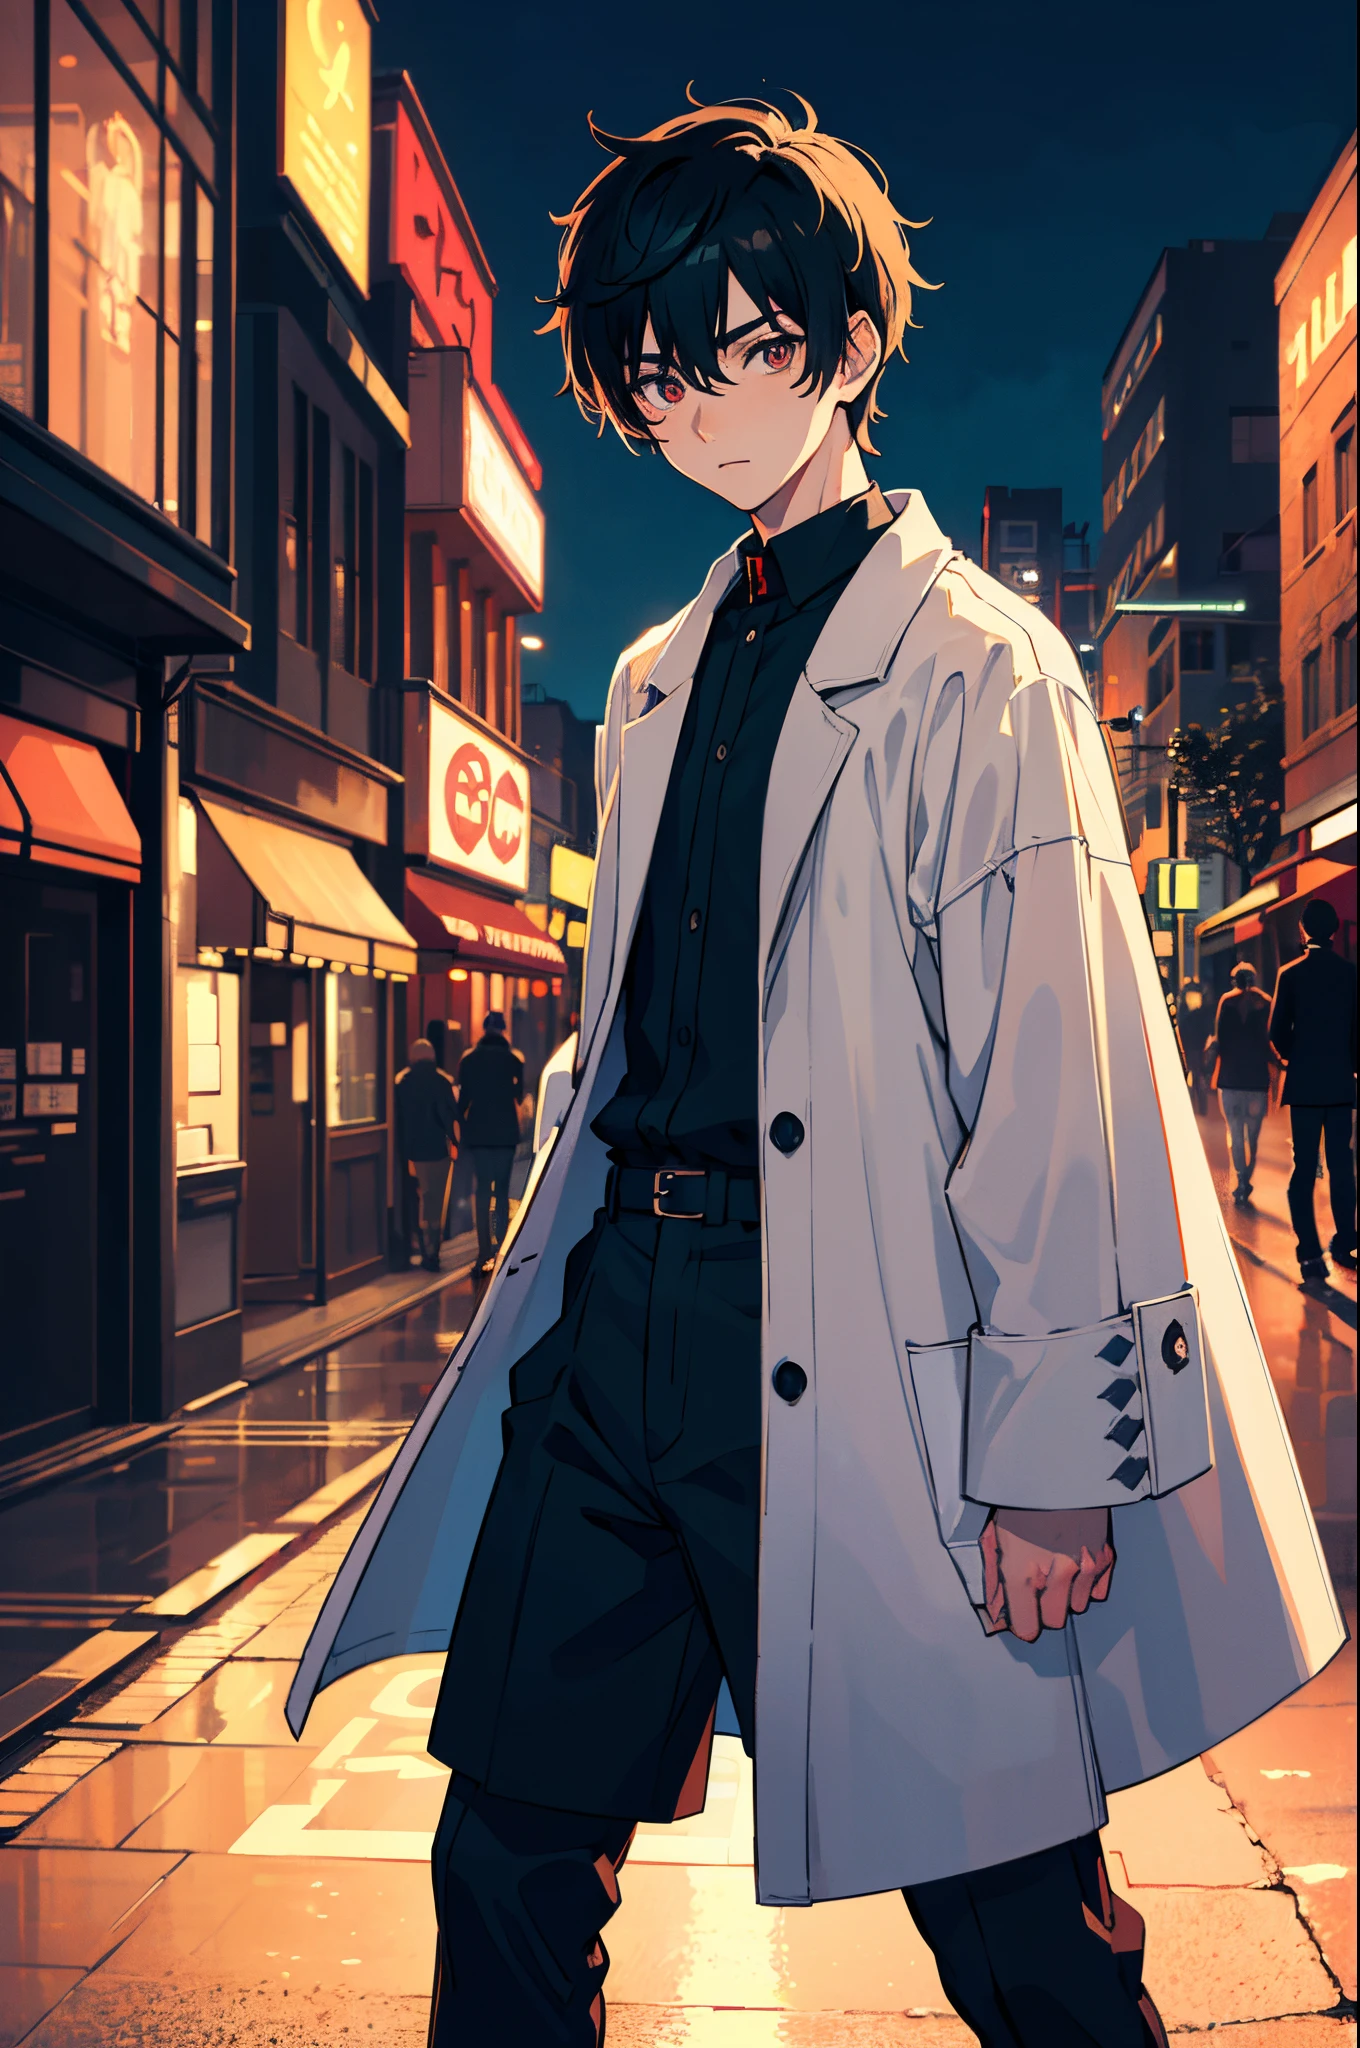 ein Junge, in einen Anime-Stil verwandelt, mit übertriebenen einzigartigen Gesichtszügen und Kleidung, auf einer belebten Stadtstraße stehen, Hintergrundbeleuchtung, die das Motiv hervorhebt, kontrastreiche Farben, 4K-High-Definition-Qualität，jung, ruhig, Gutaussehend